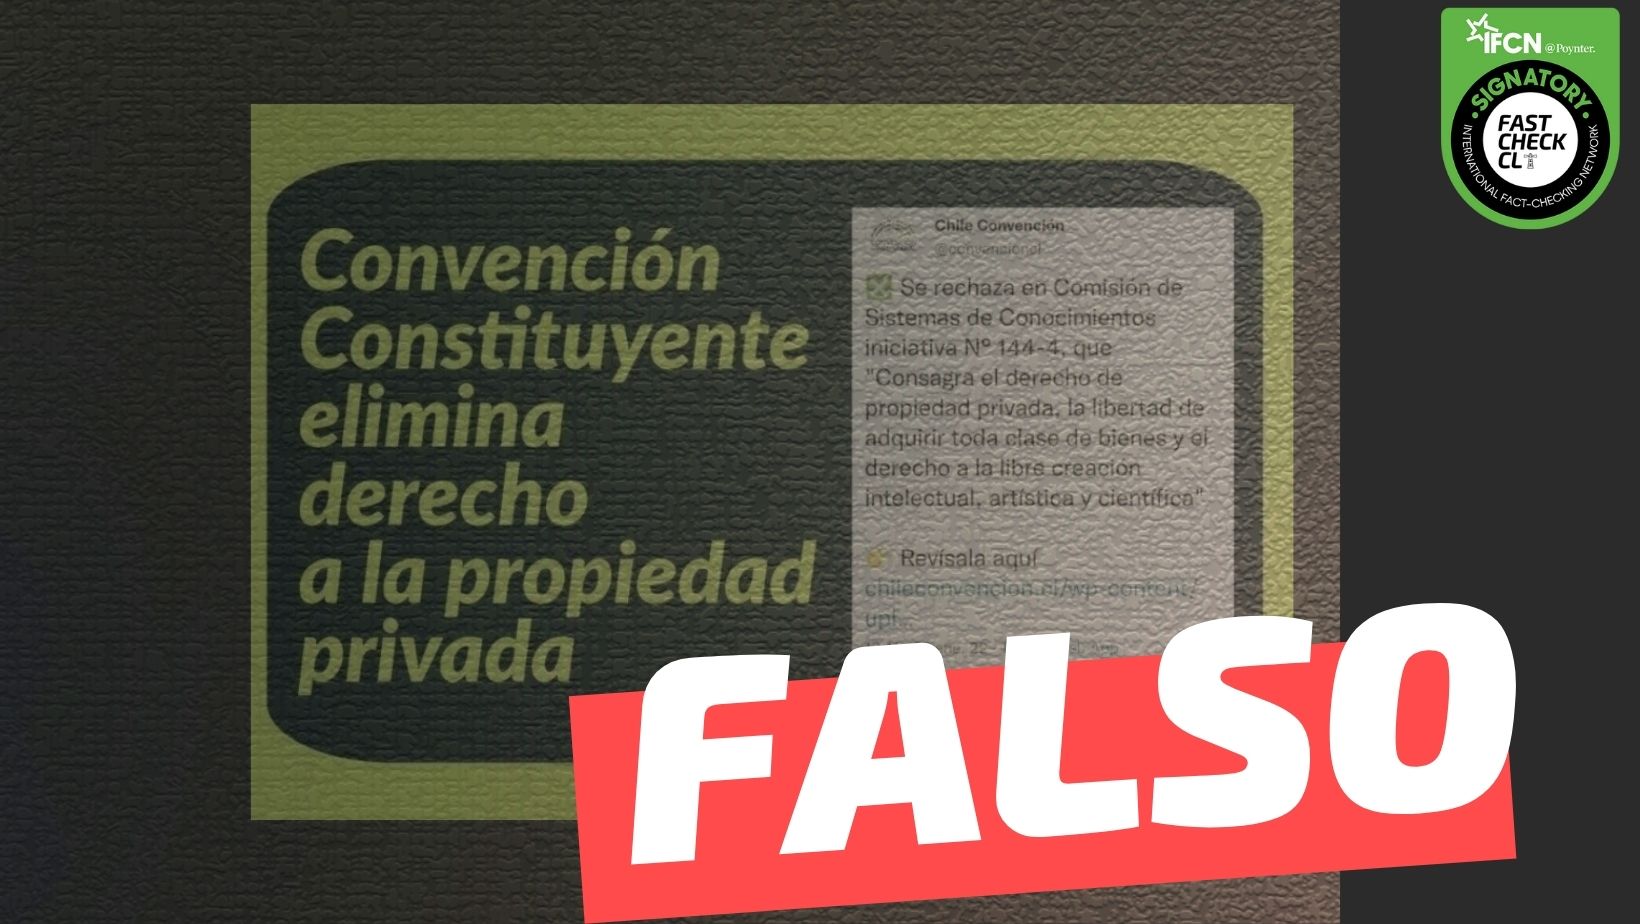 You are currently viewing “Convención Constituyente elimina derecho a la propiedad privada”: #Falso